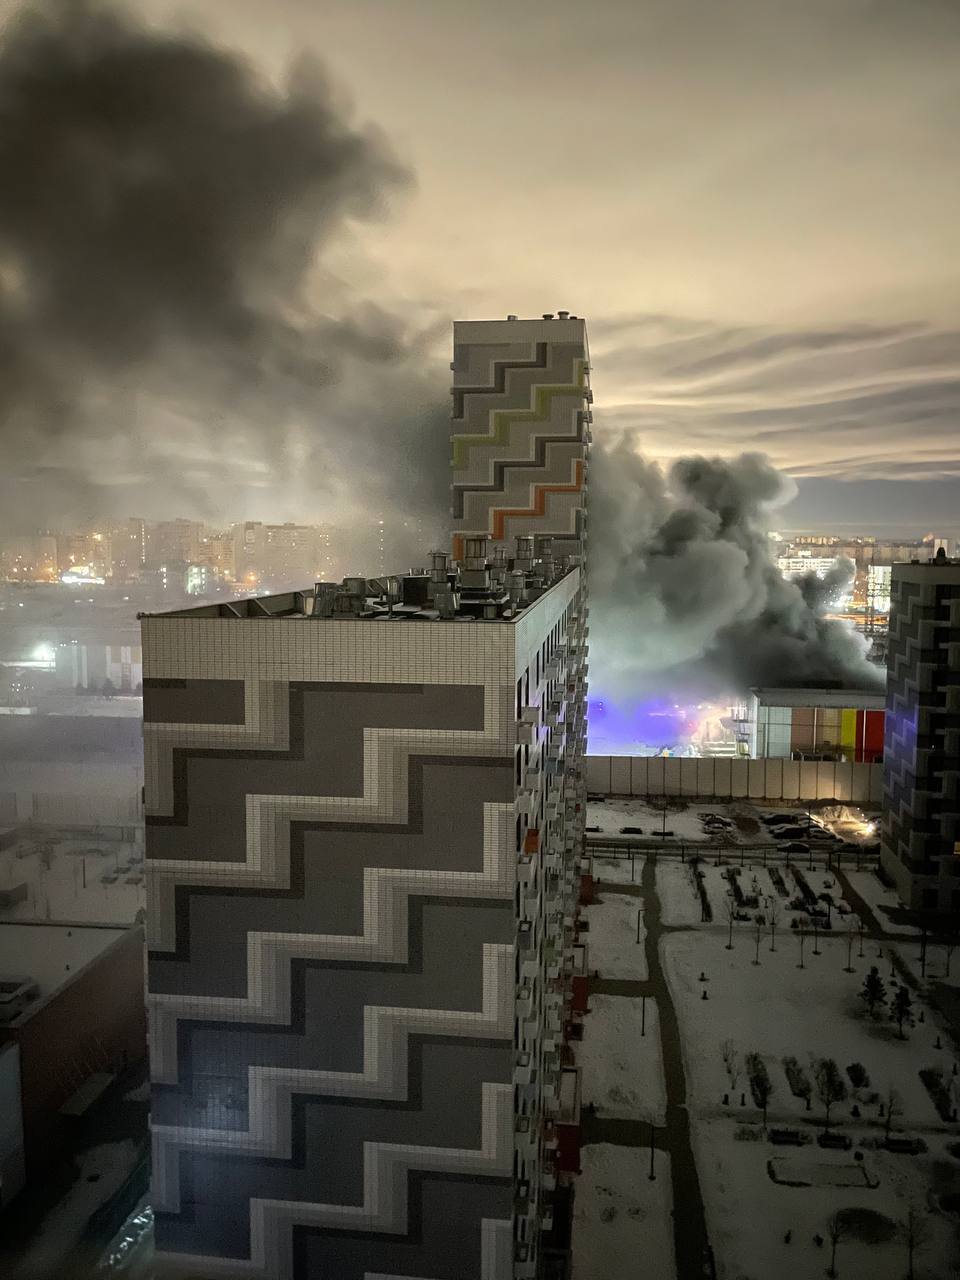 Без света, воды и тепла в мороз 25 градусов: Москву догнал "бумеранг" из-за пожара на трансформаторной подстанции. Фото и видео